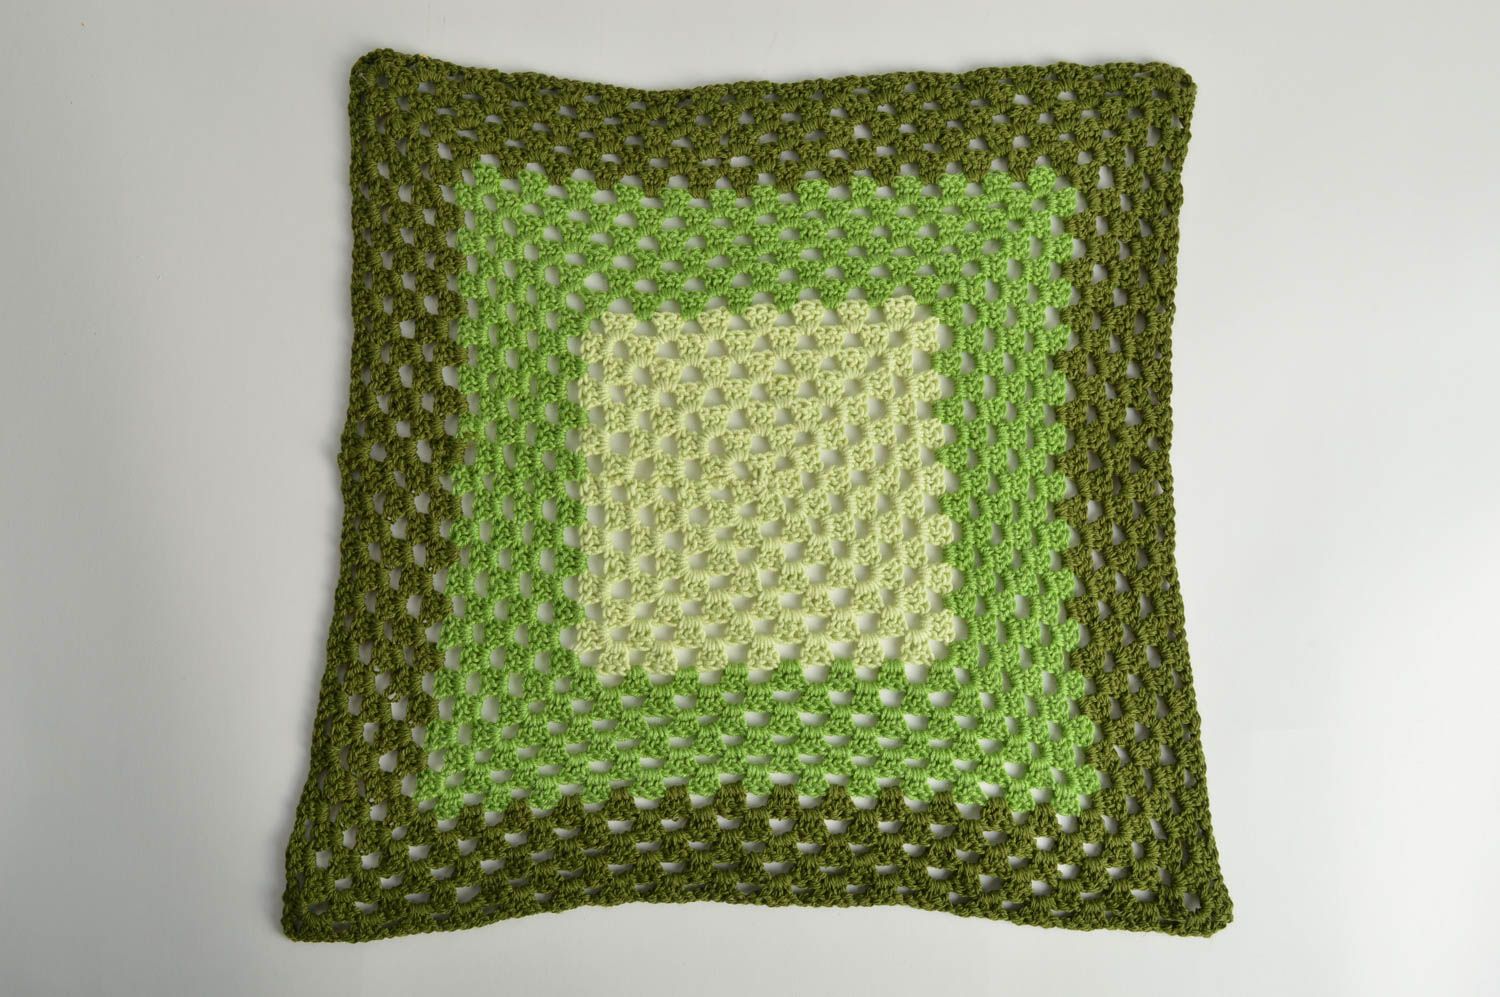 Вязаная салфетка крючком зеленая квадратная большая ажурная красивая хэнд мейд фото 3